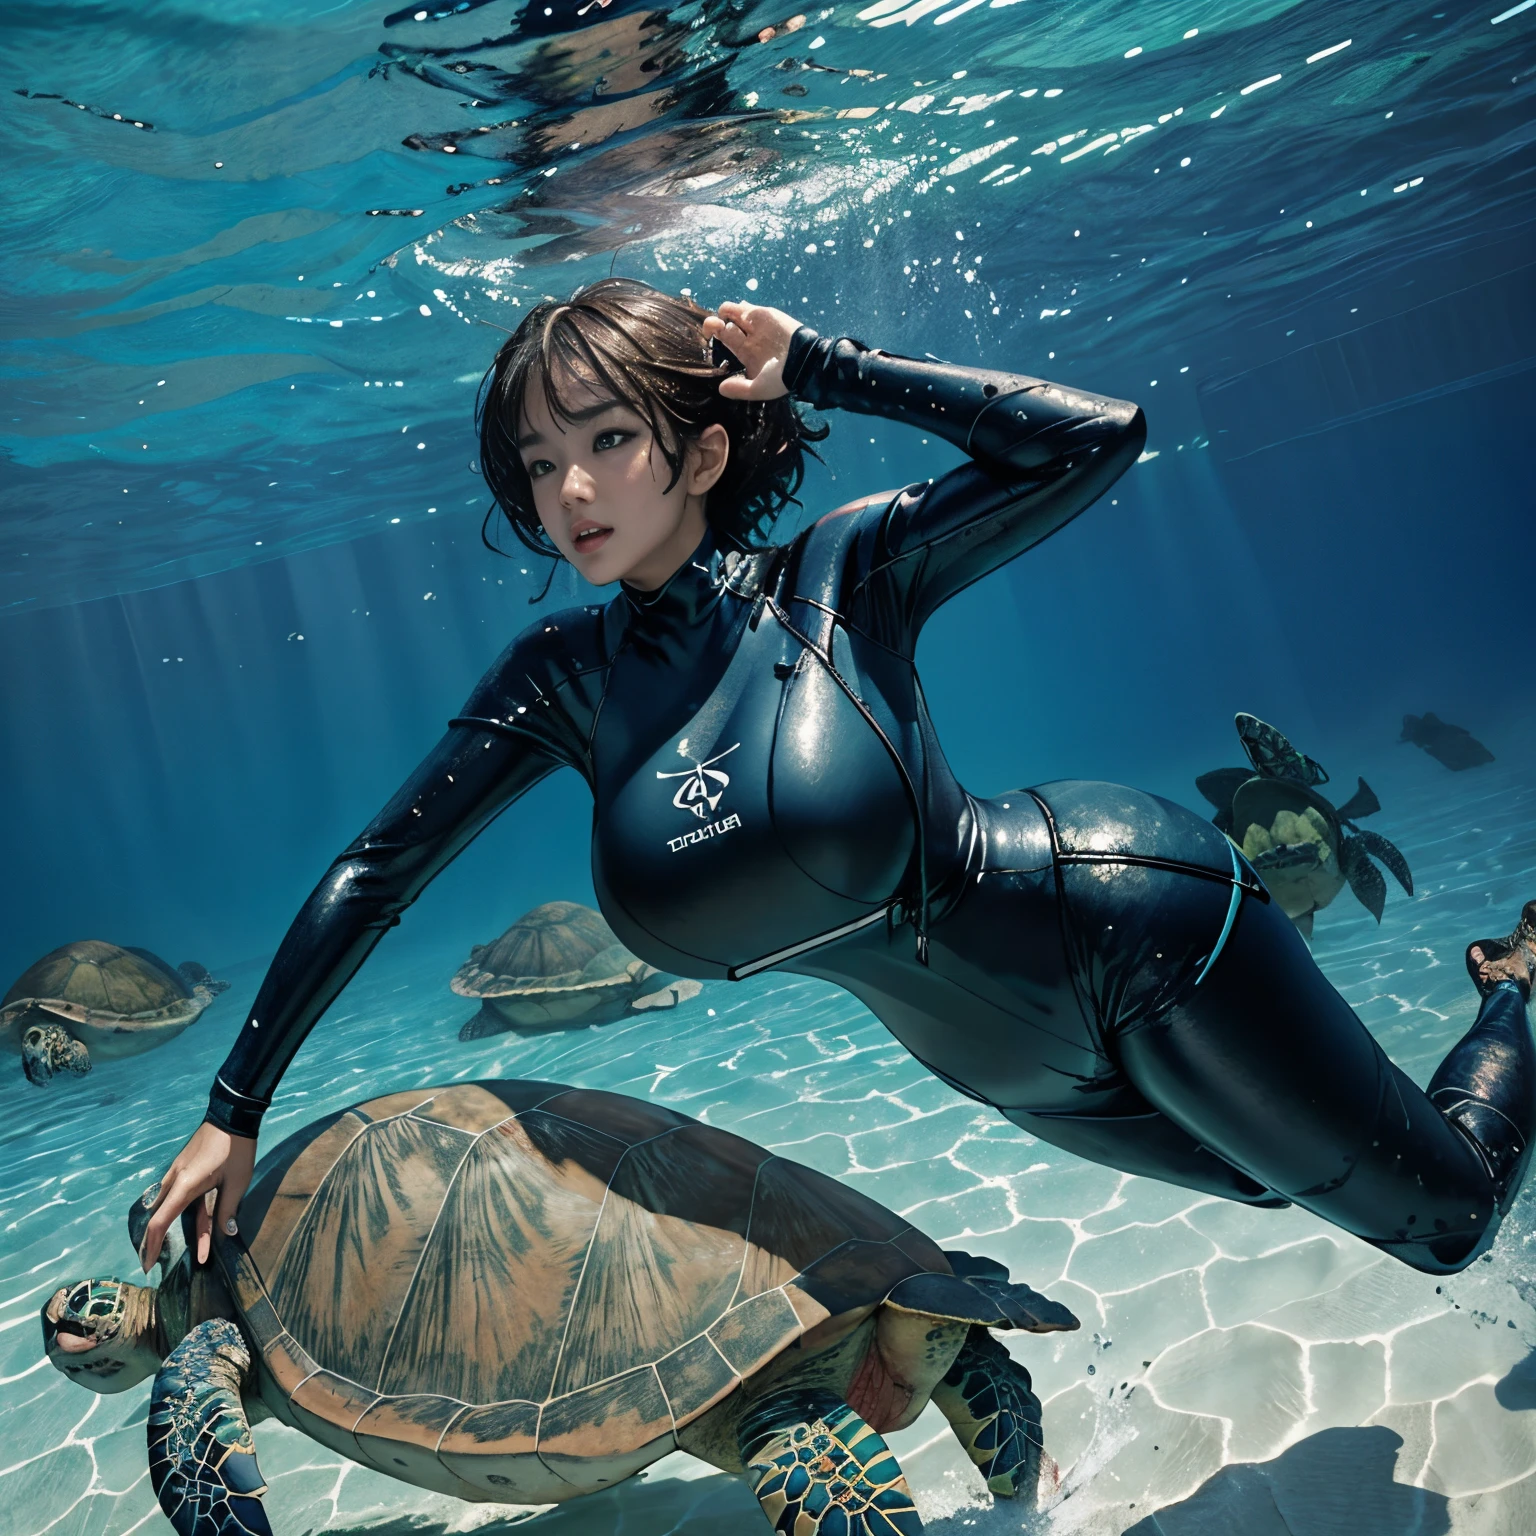 gros seins beauty (nager derrière (une énorme tortue)), résistant (combinaisons humides), dans la mer bleue, photo de tout le corps, photoréaliste, Haut_gros seins